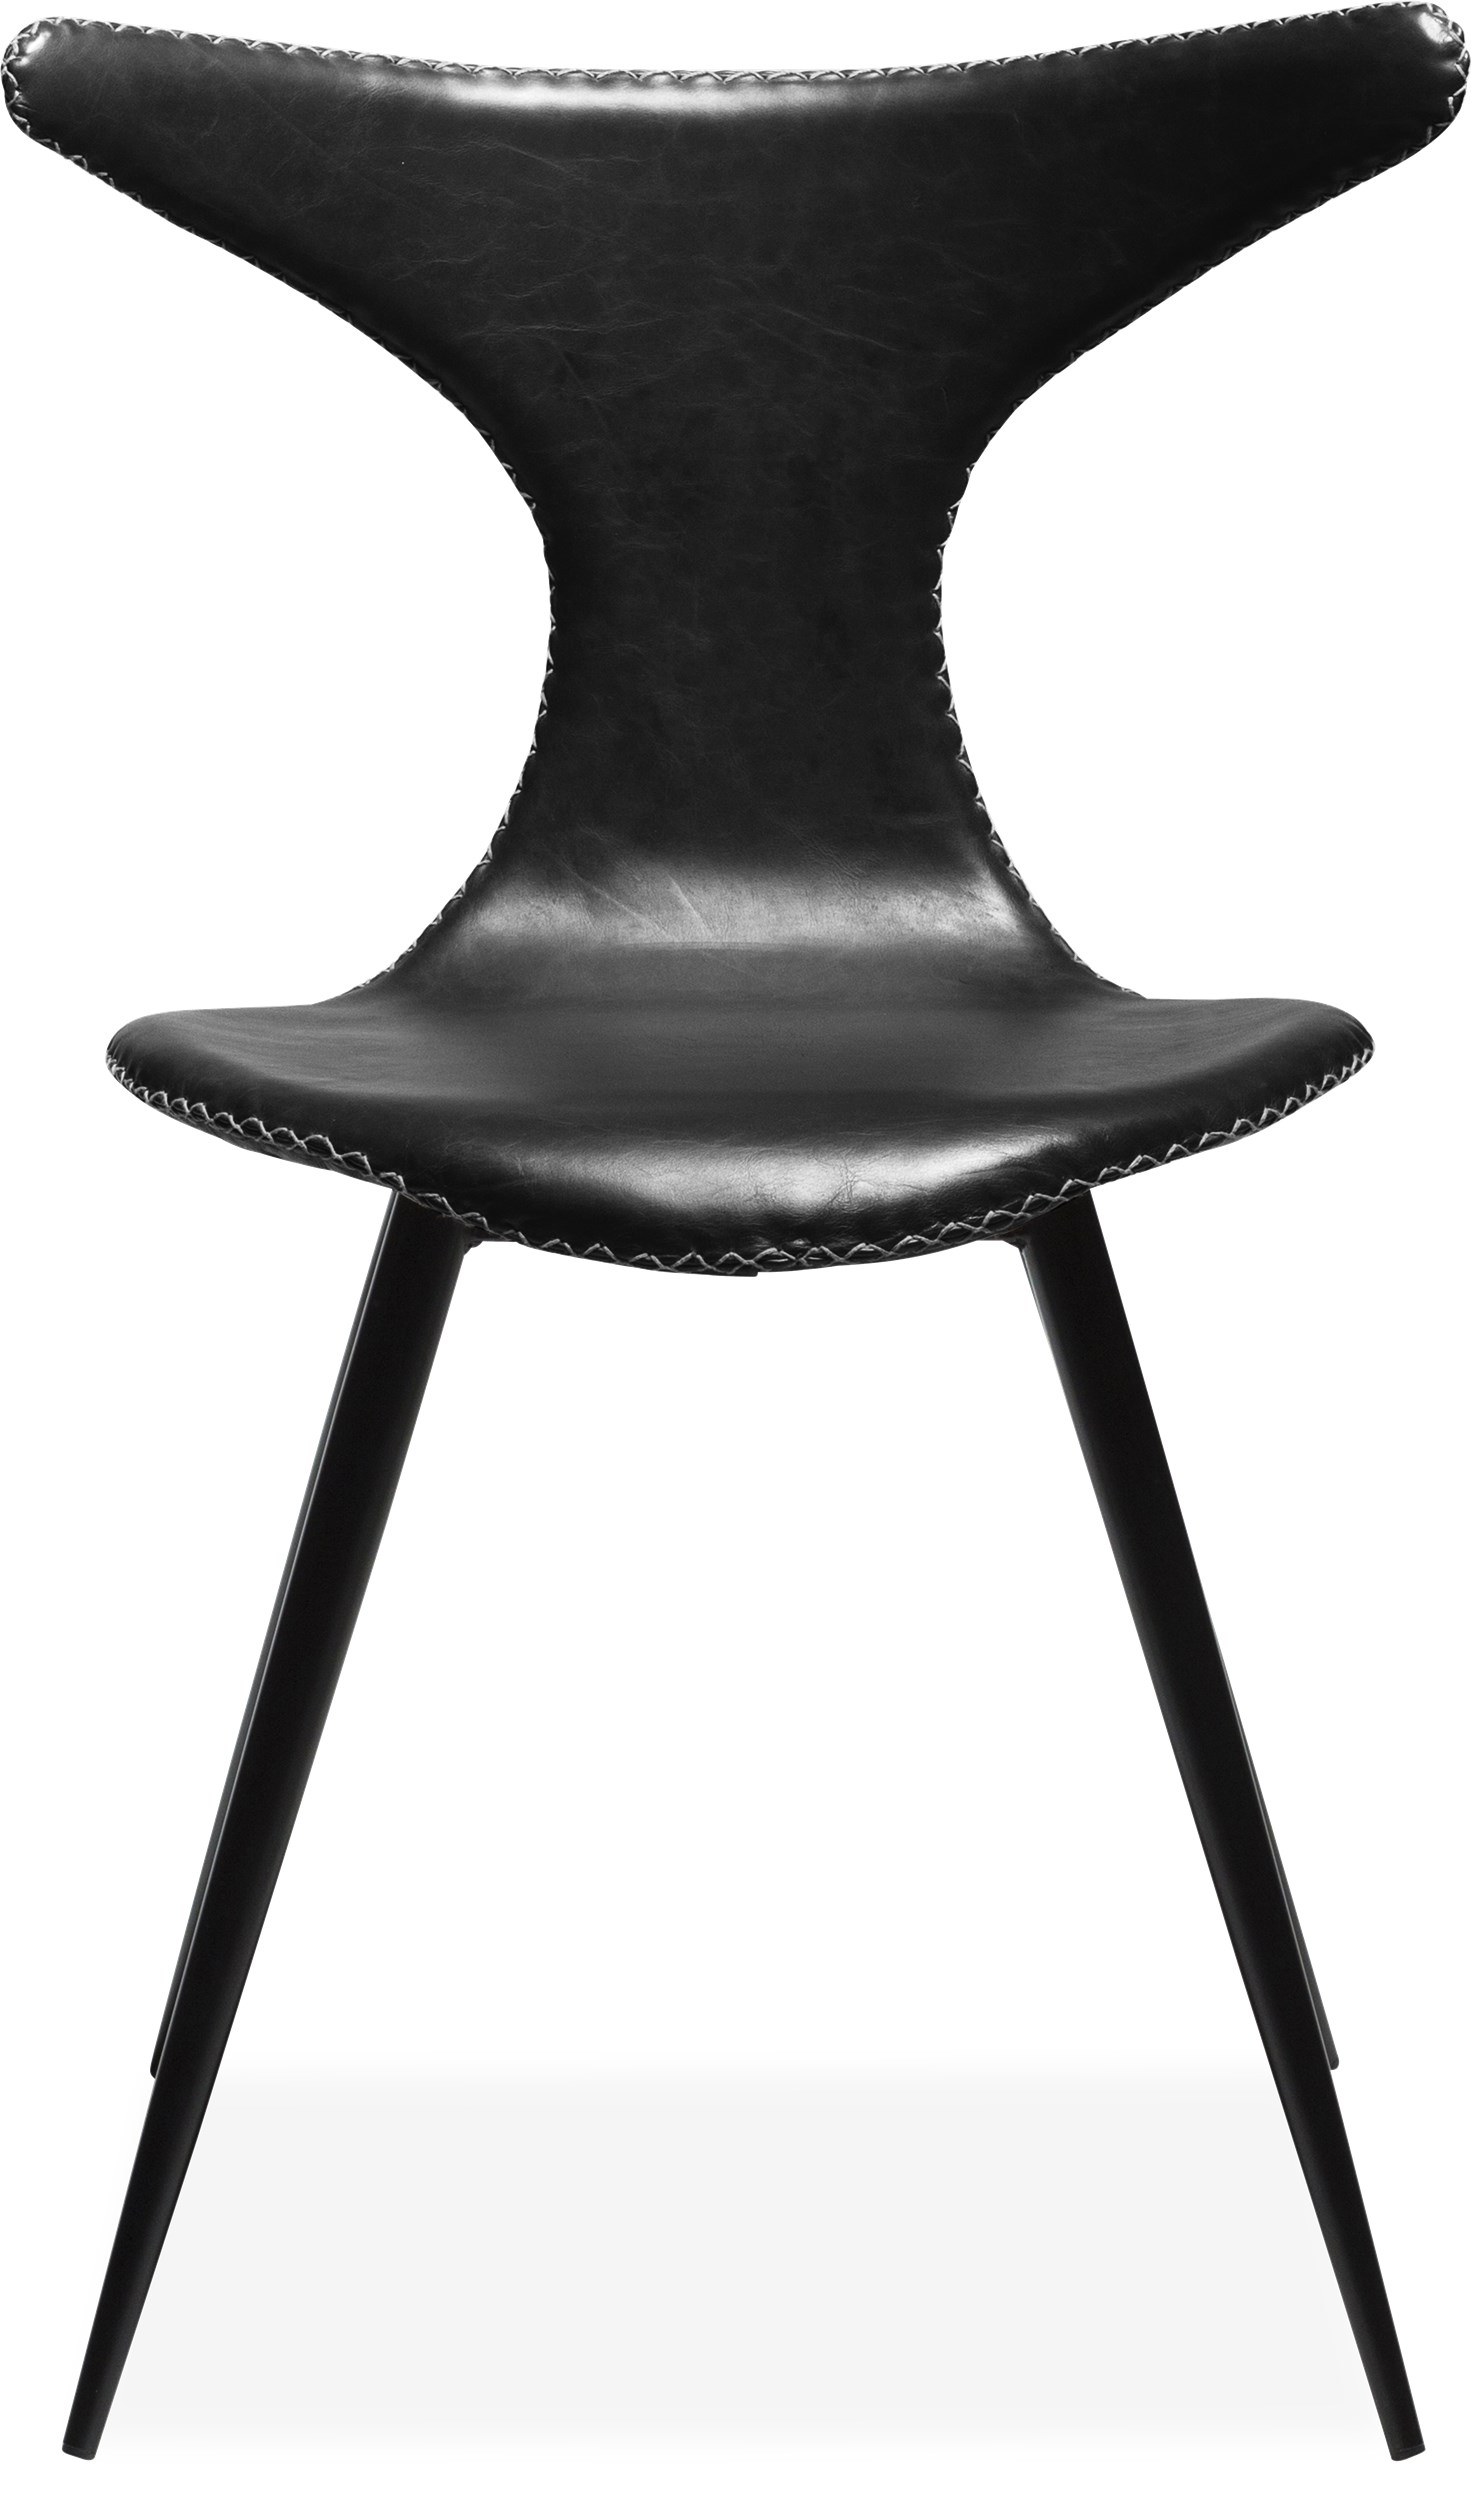 Dolphin matstol - sits i svart vintage konstläder, med kontrastfärgade sömmar och runda ben i svartlackerad metall